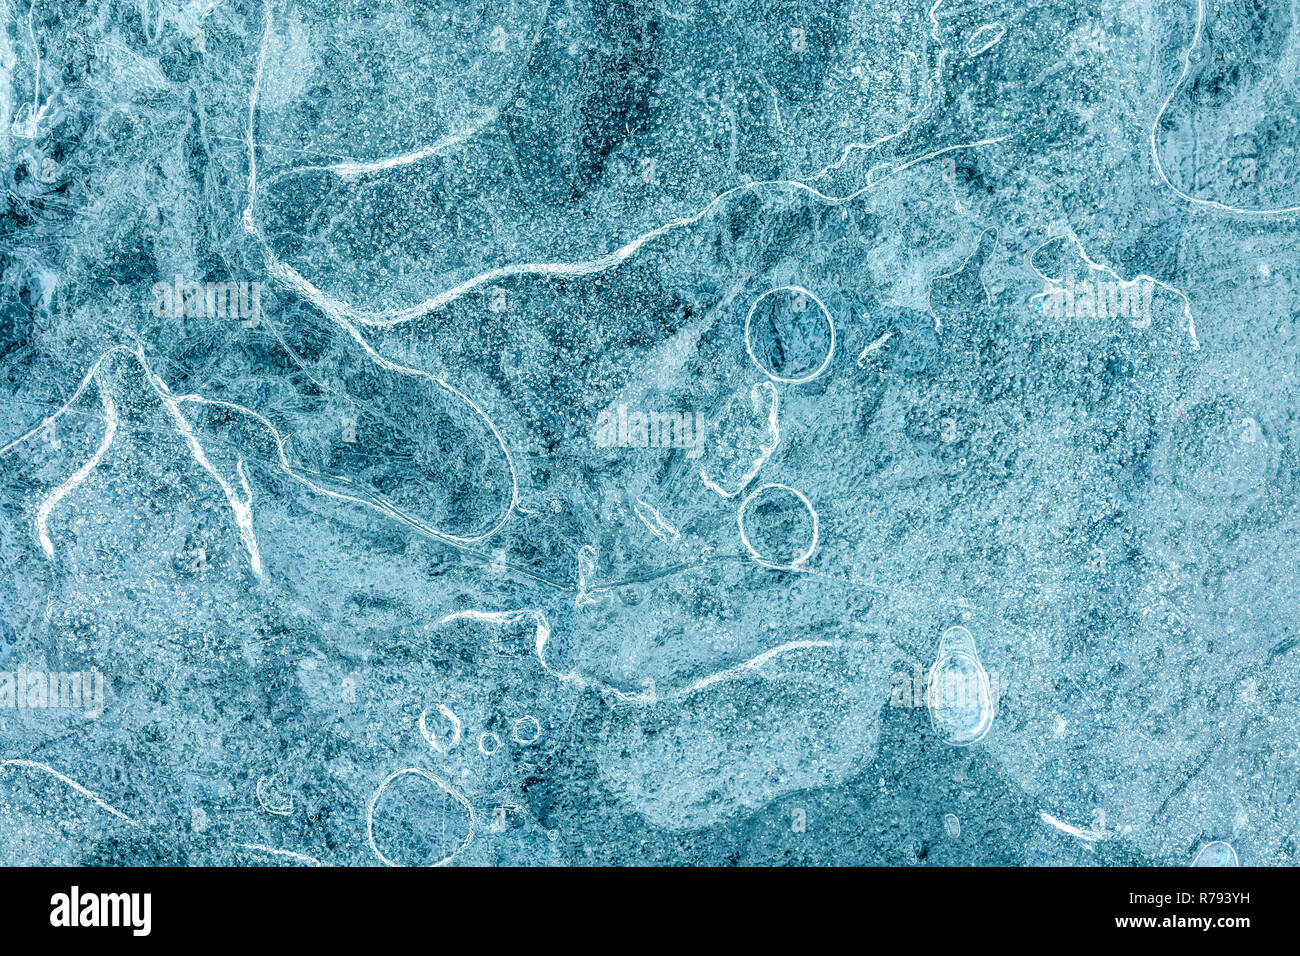 Risse im frostigen Eis Struktur Makro anzeigen. Gefrorener Fluss Wasser für strukturierte Muster Hintergrund Stockfoto